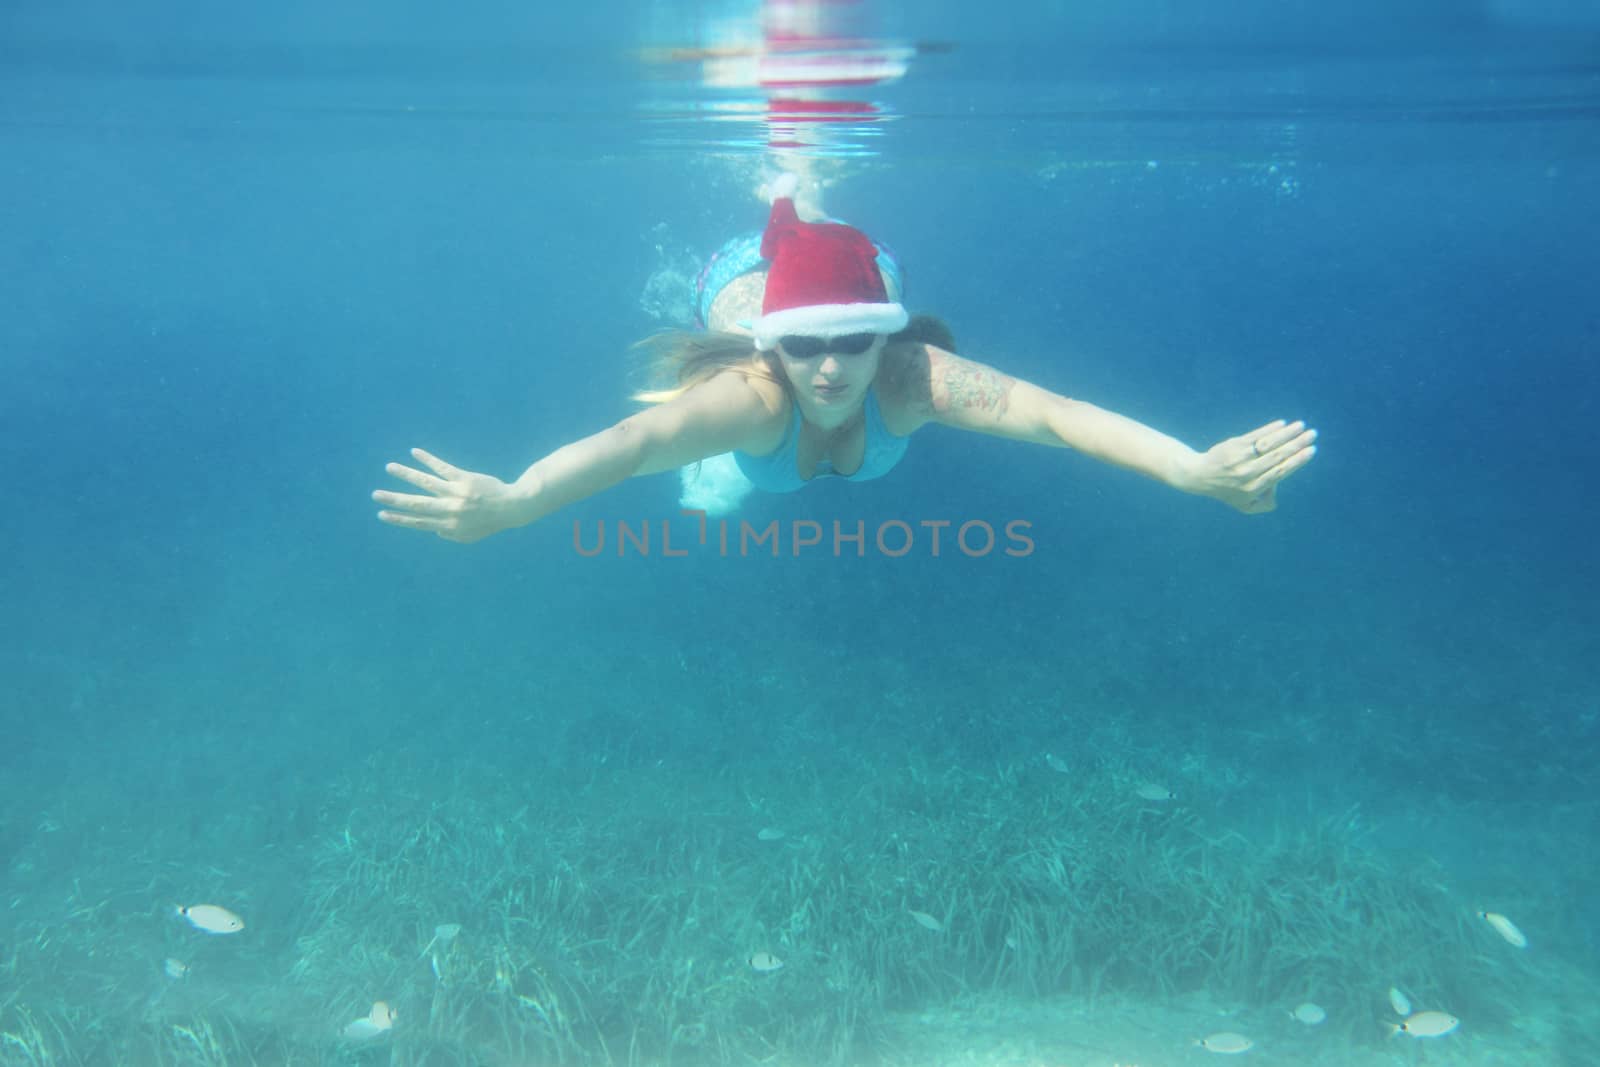 Woman in Santa hat swimming underwater by destillat